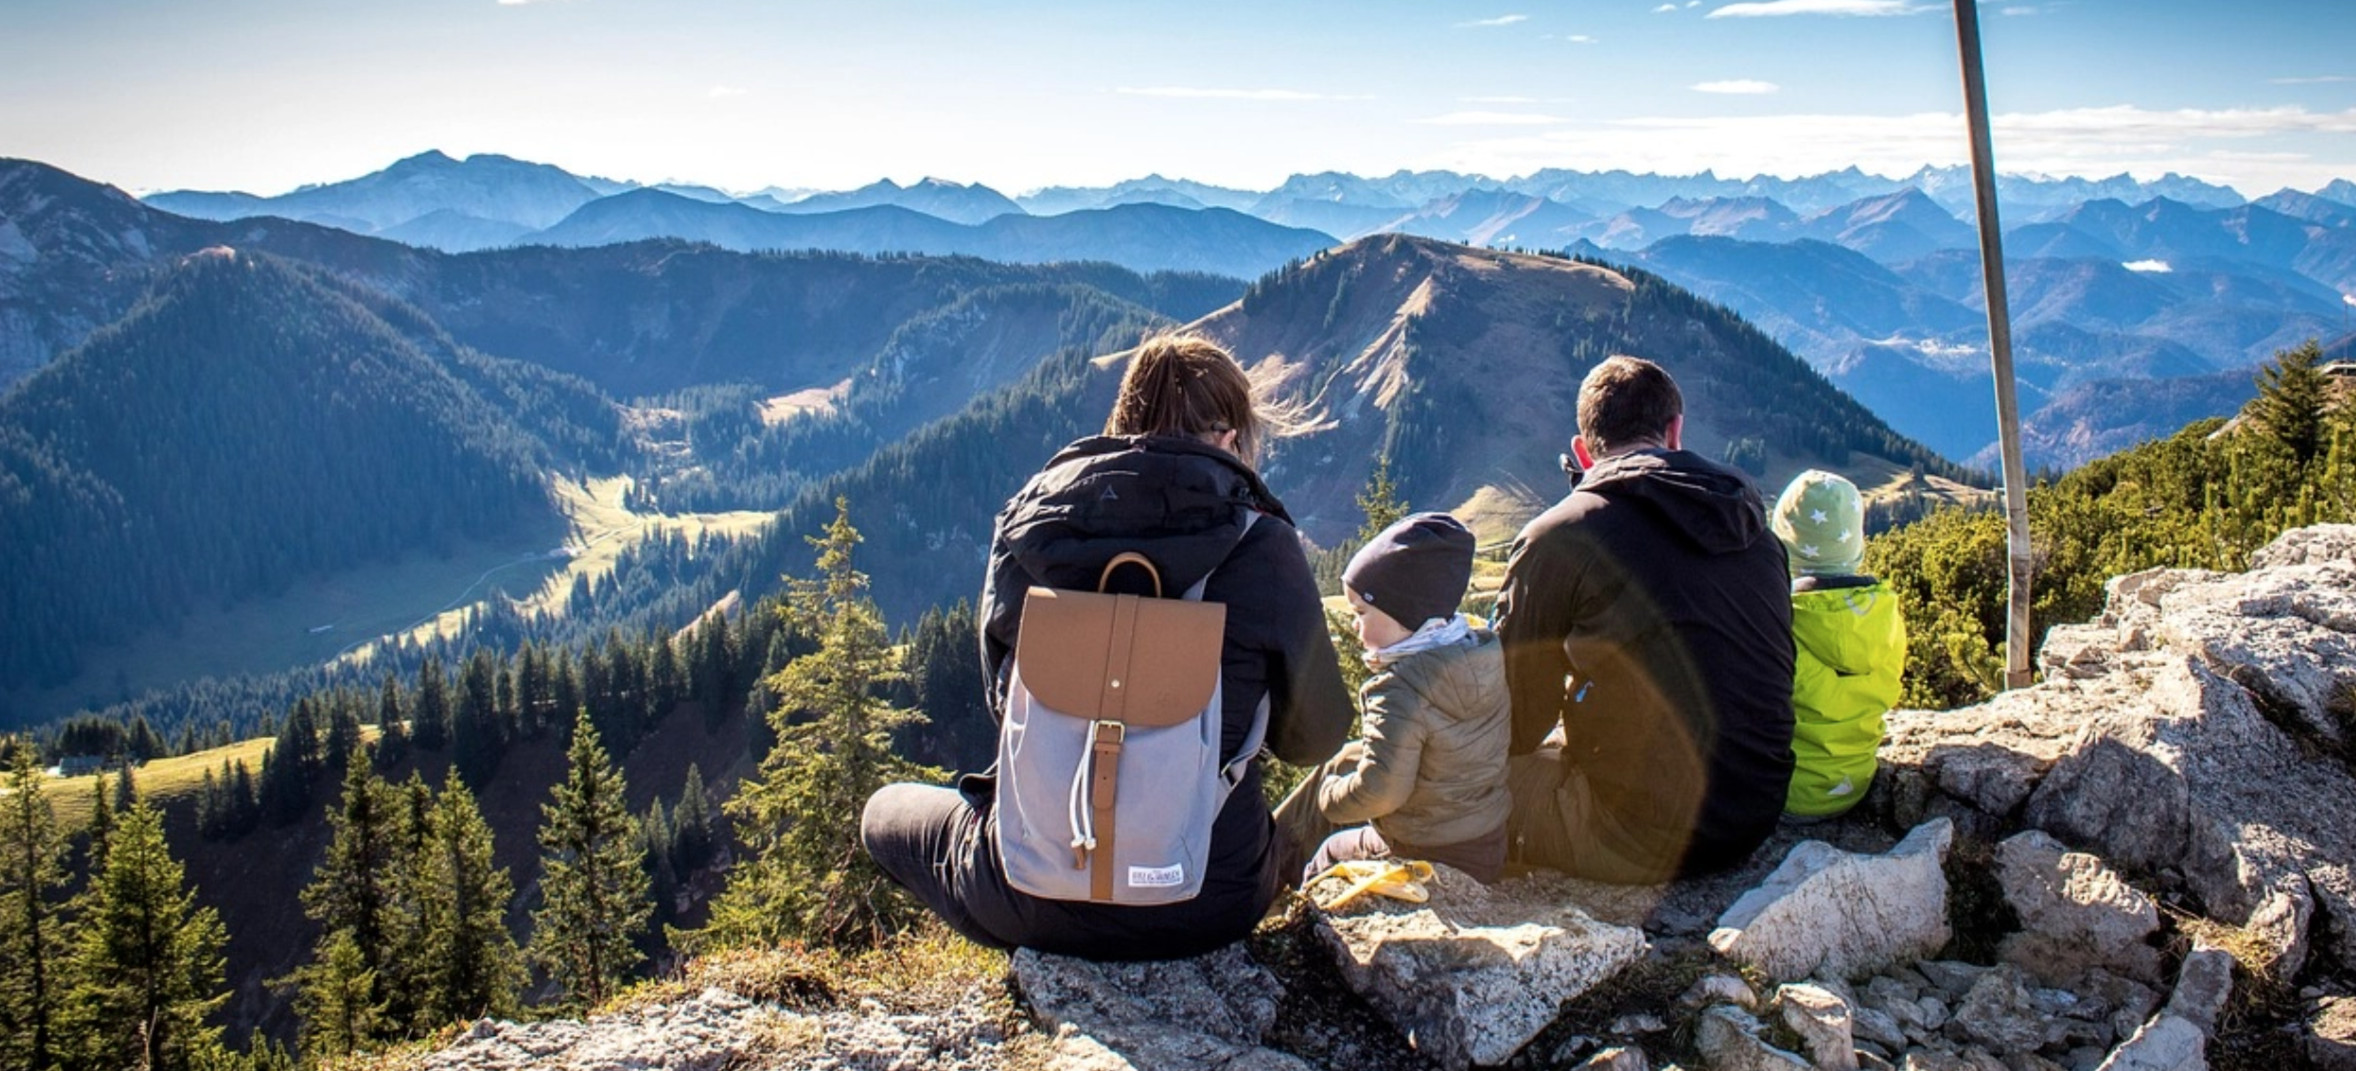 Eine Familie mit Wanderausrüstung ruht sich sitzend auf dem Gipfel eines Berges aus und geniesst die Aussicht ins Tal.